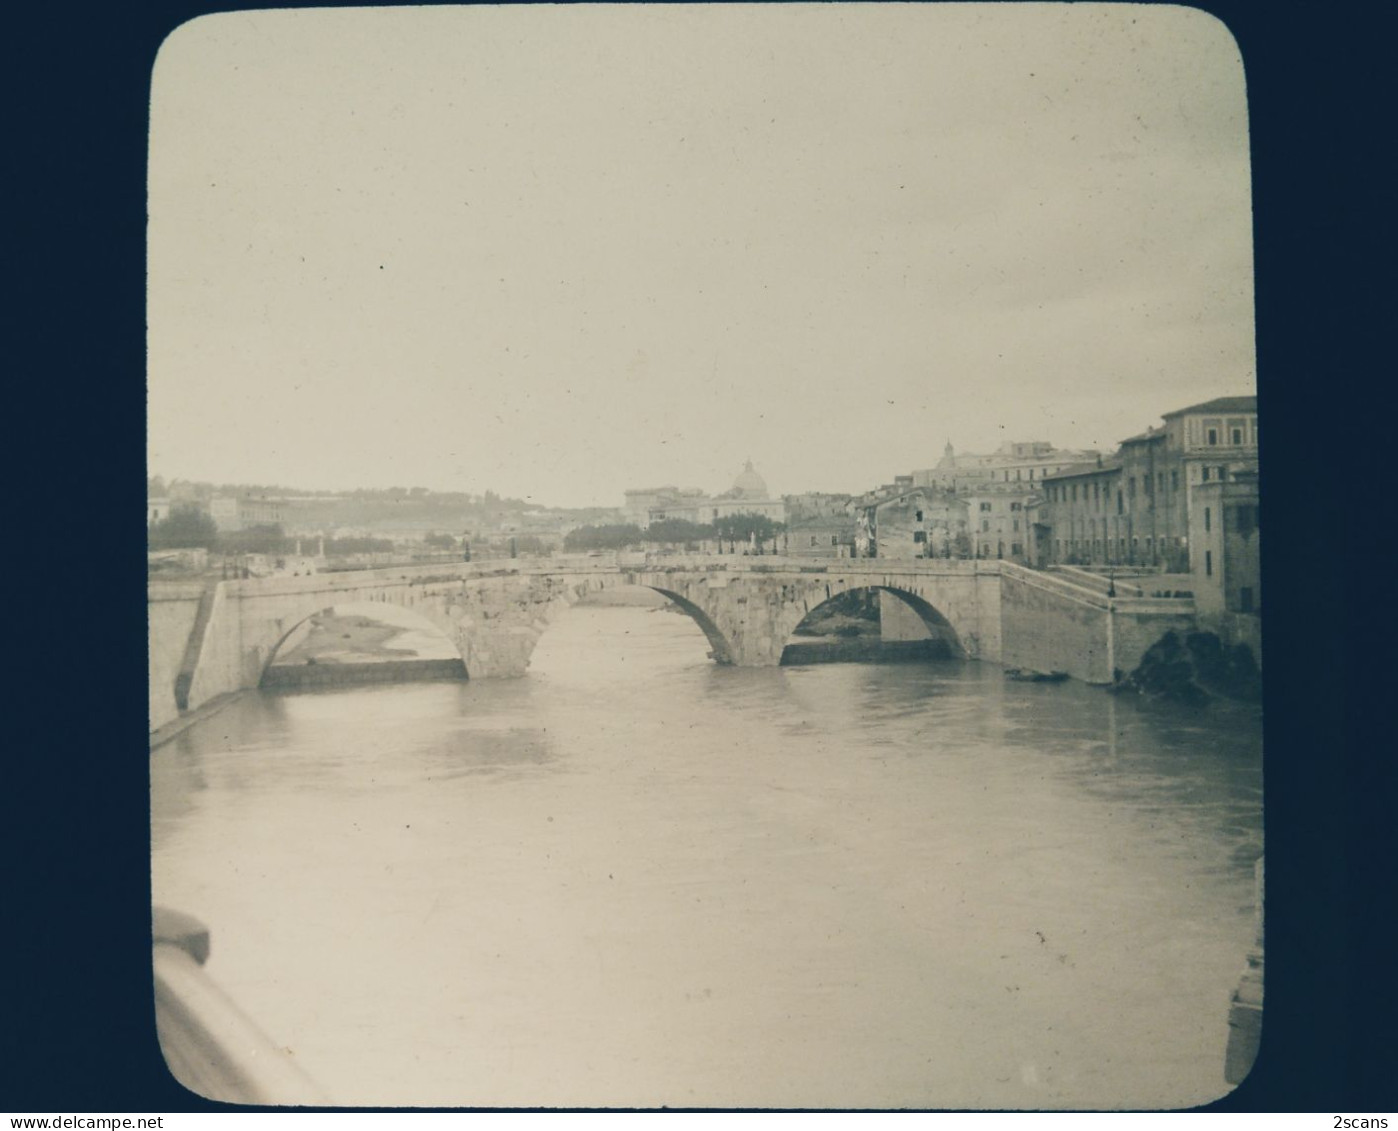 Italie - ROME - ROMA - Plaque De Verre Ancienne (1906) - Le Pont Sisto Sur Le Tibre - Brücken